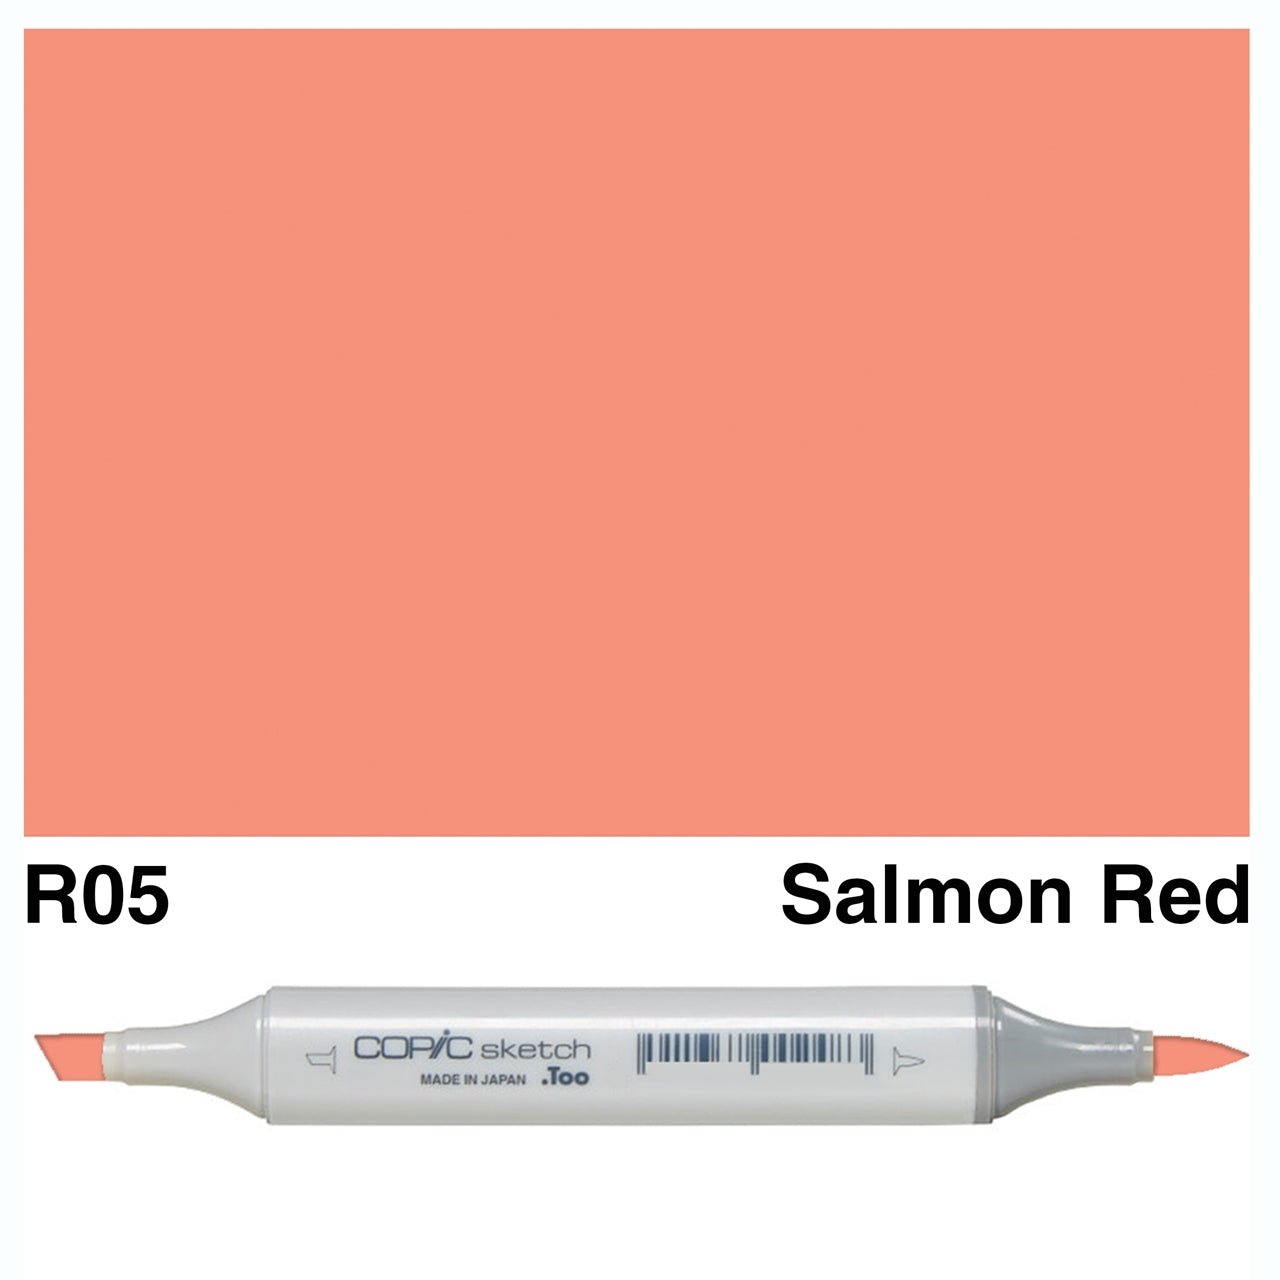 Copic Sketch R05 Salmon Red - theartshop.com.au